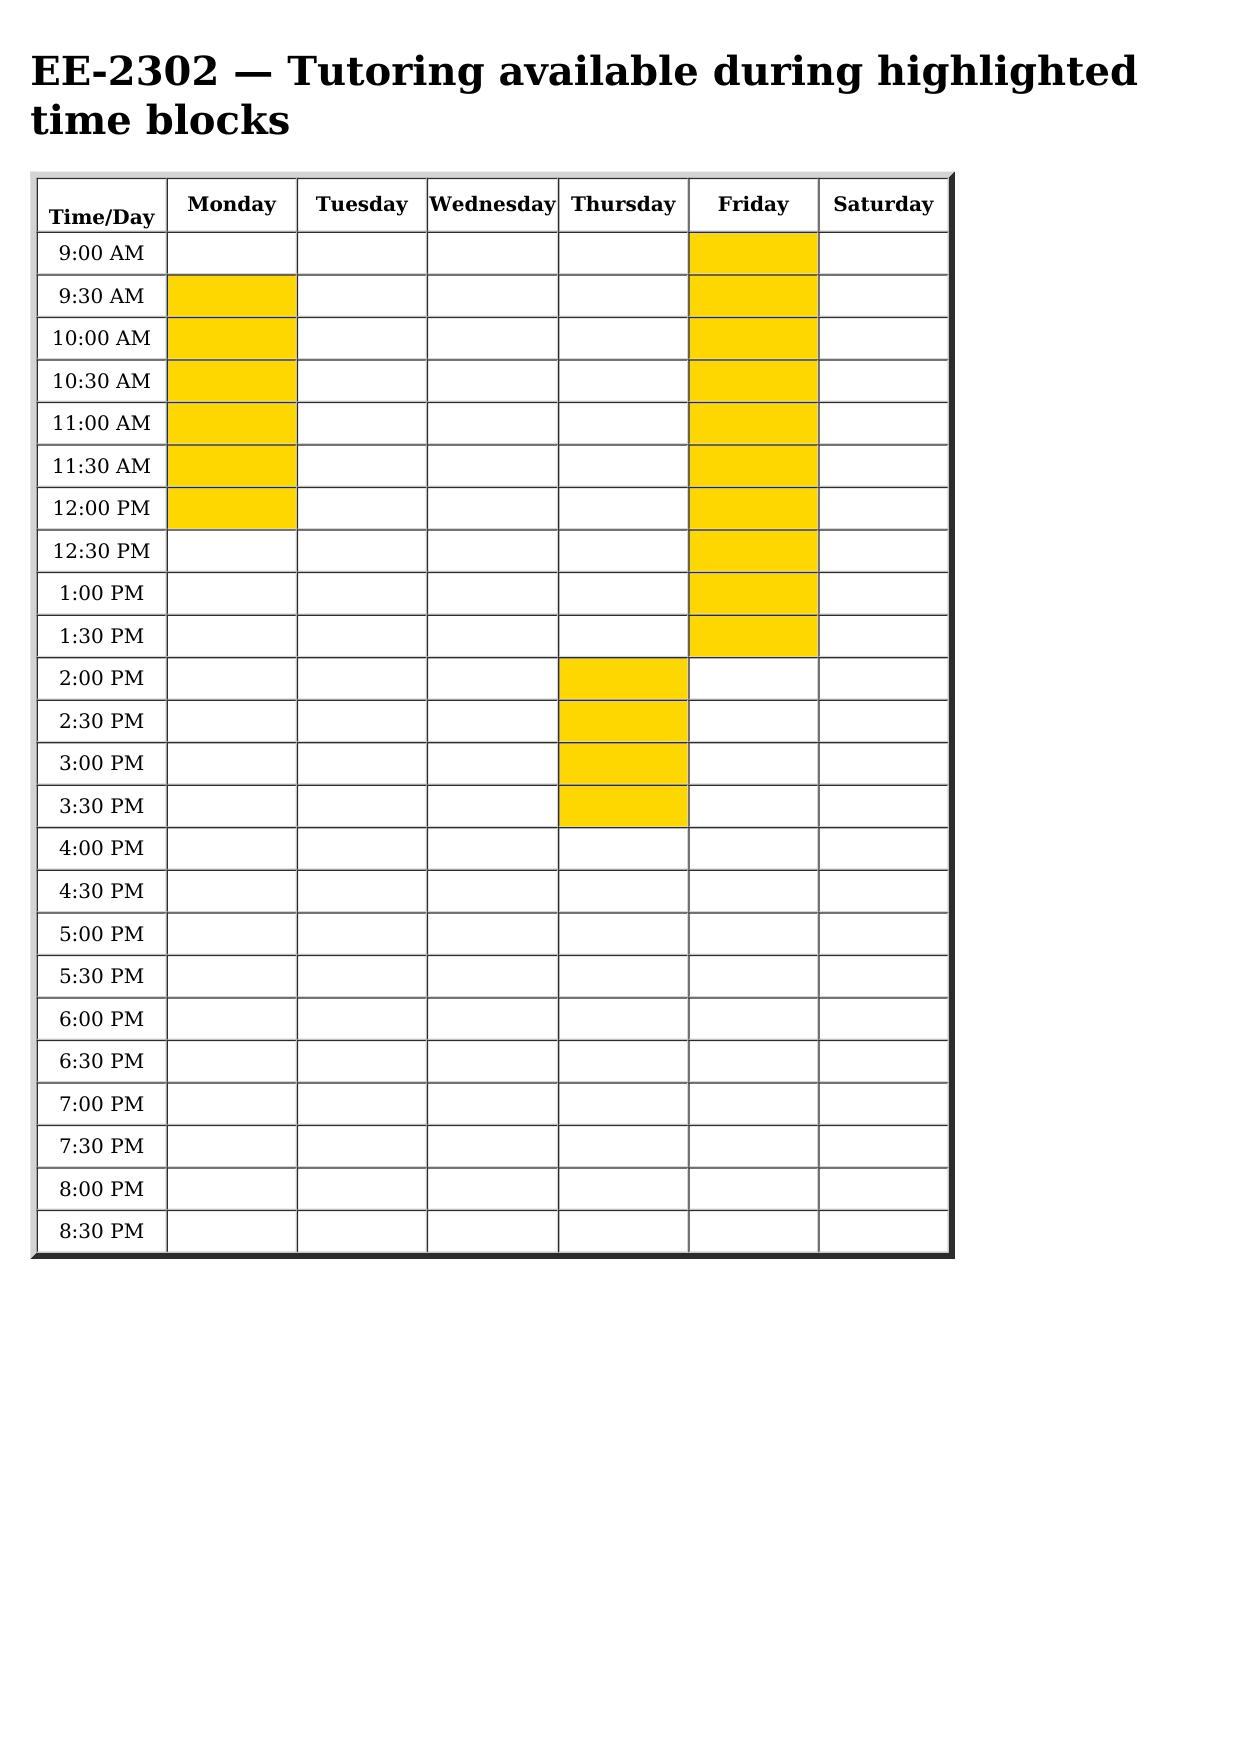 ee 2302 schedule